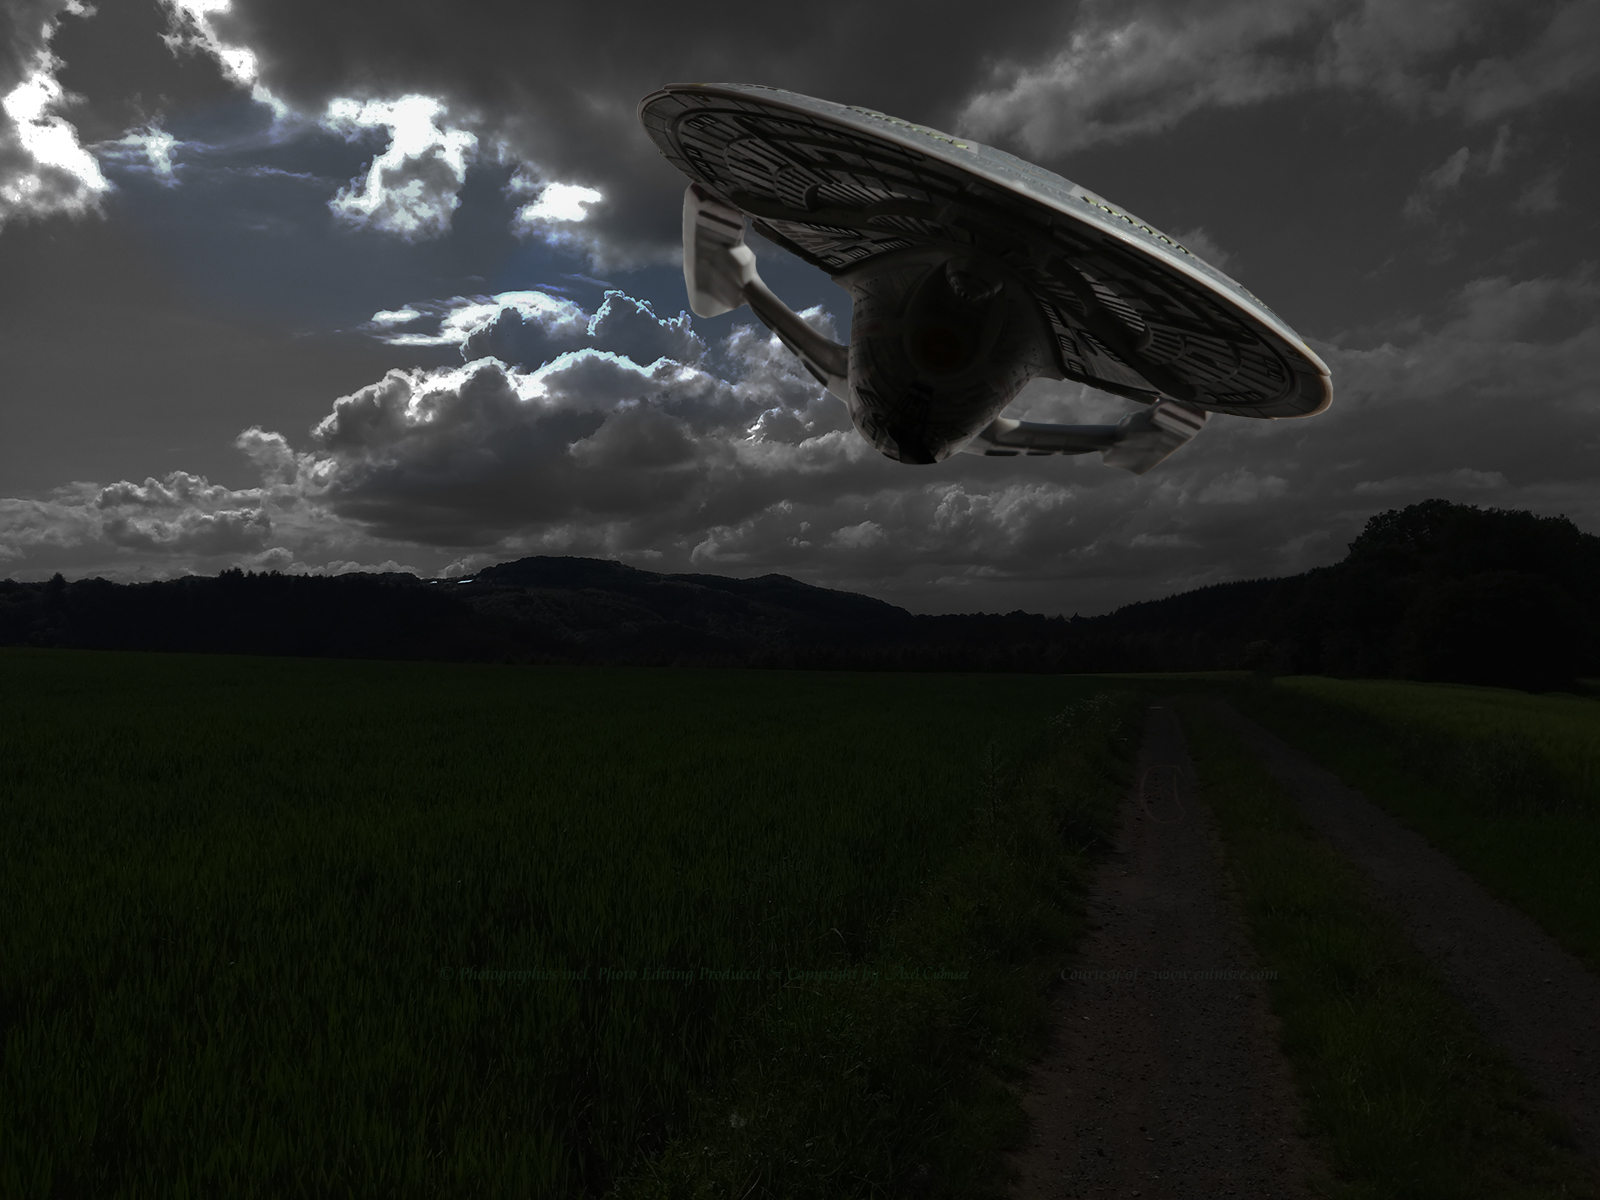 NCC-1701-E low-level flight across fields in the dark